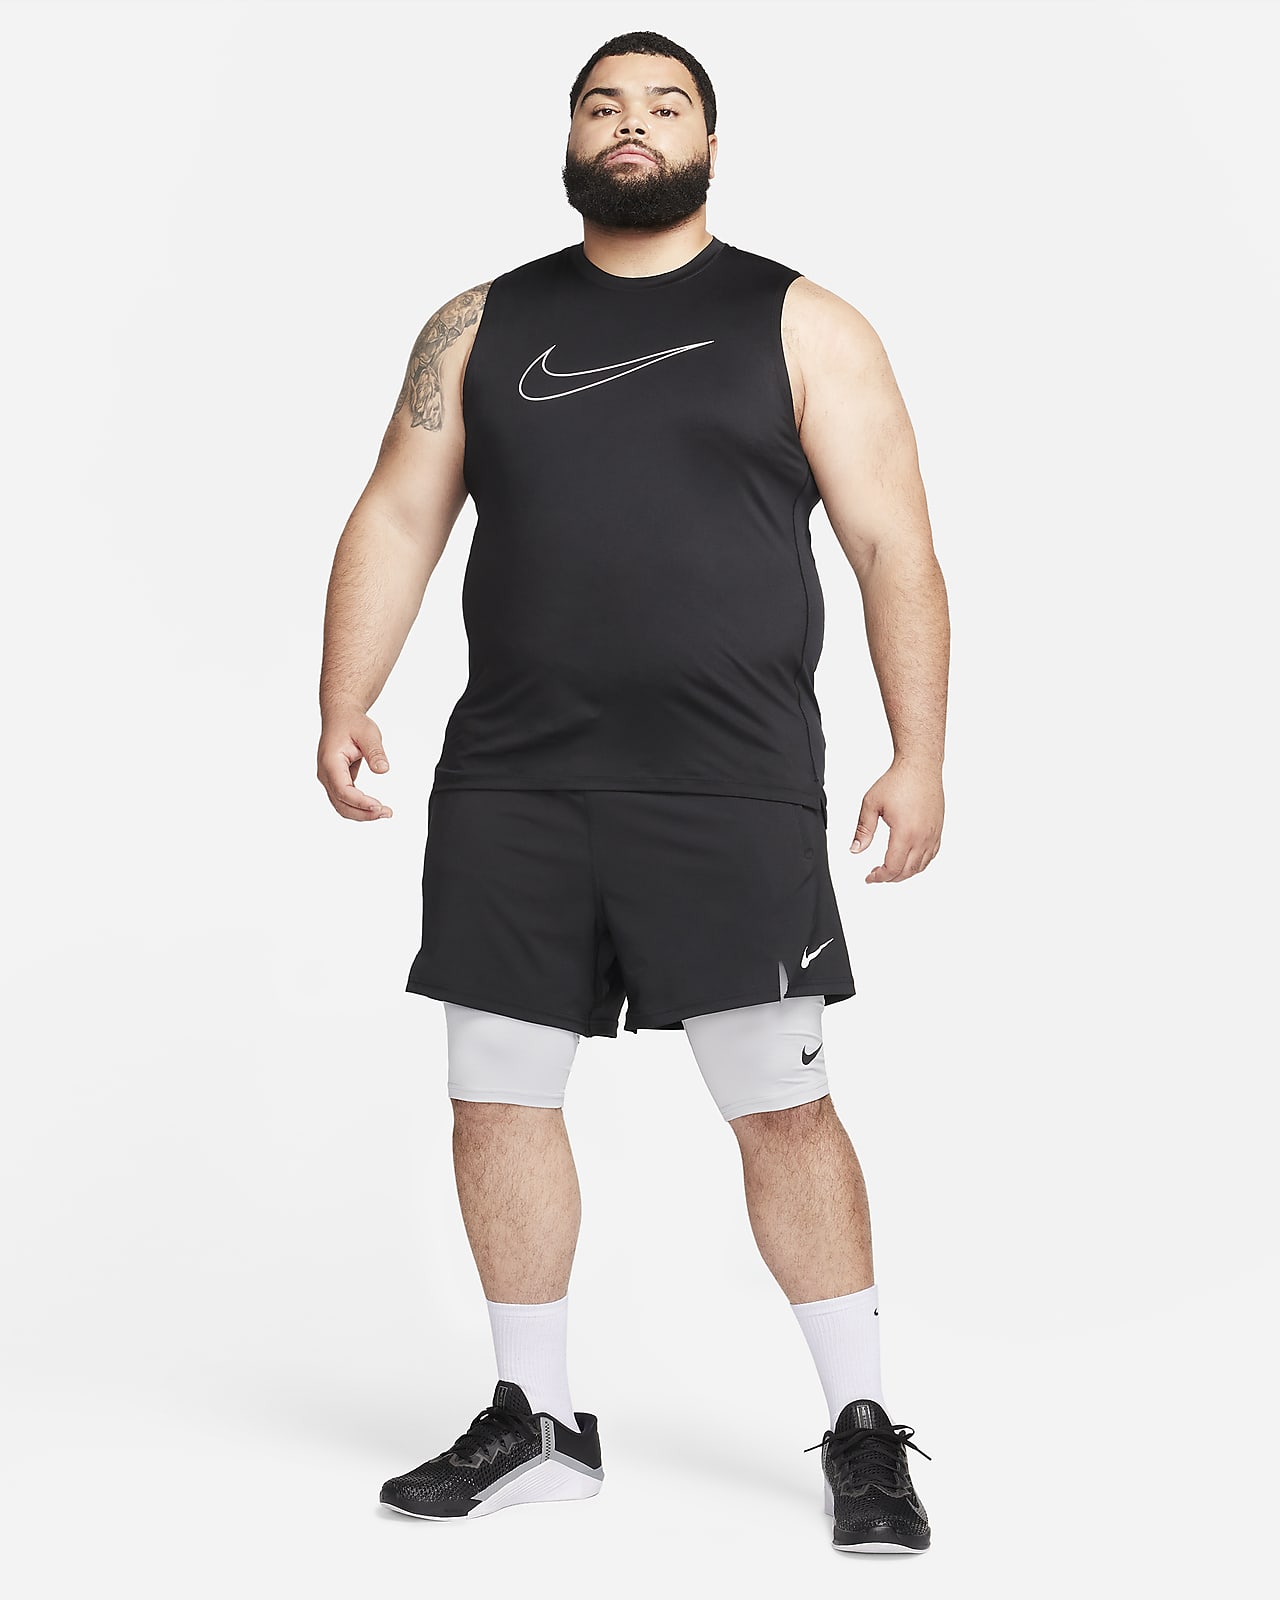 Mallas running Nike hombre